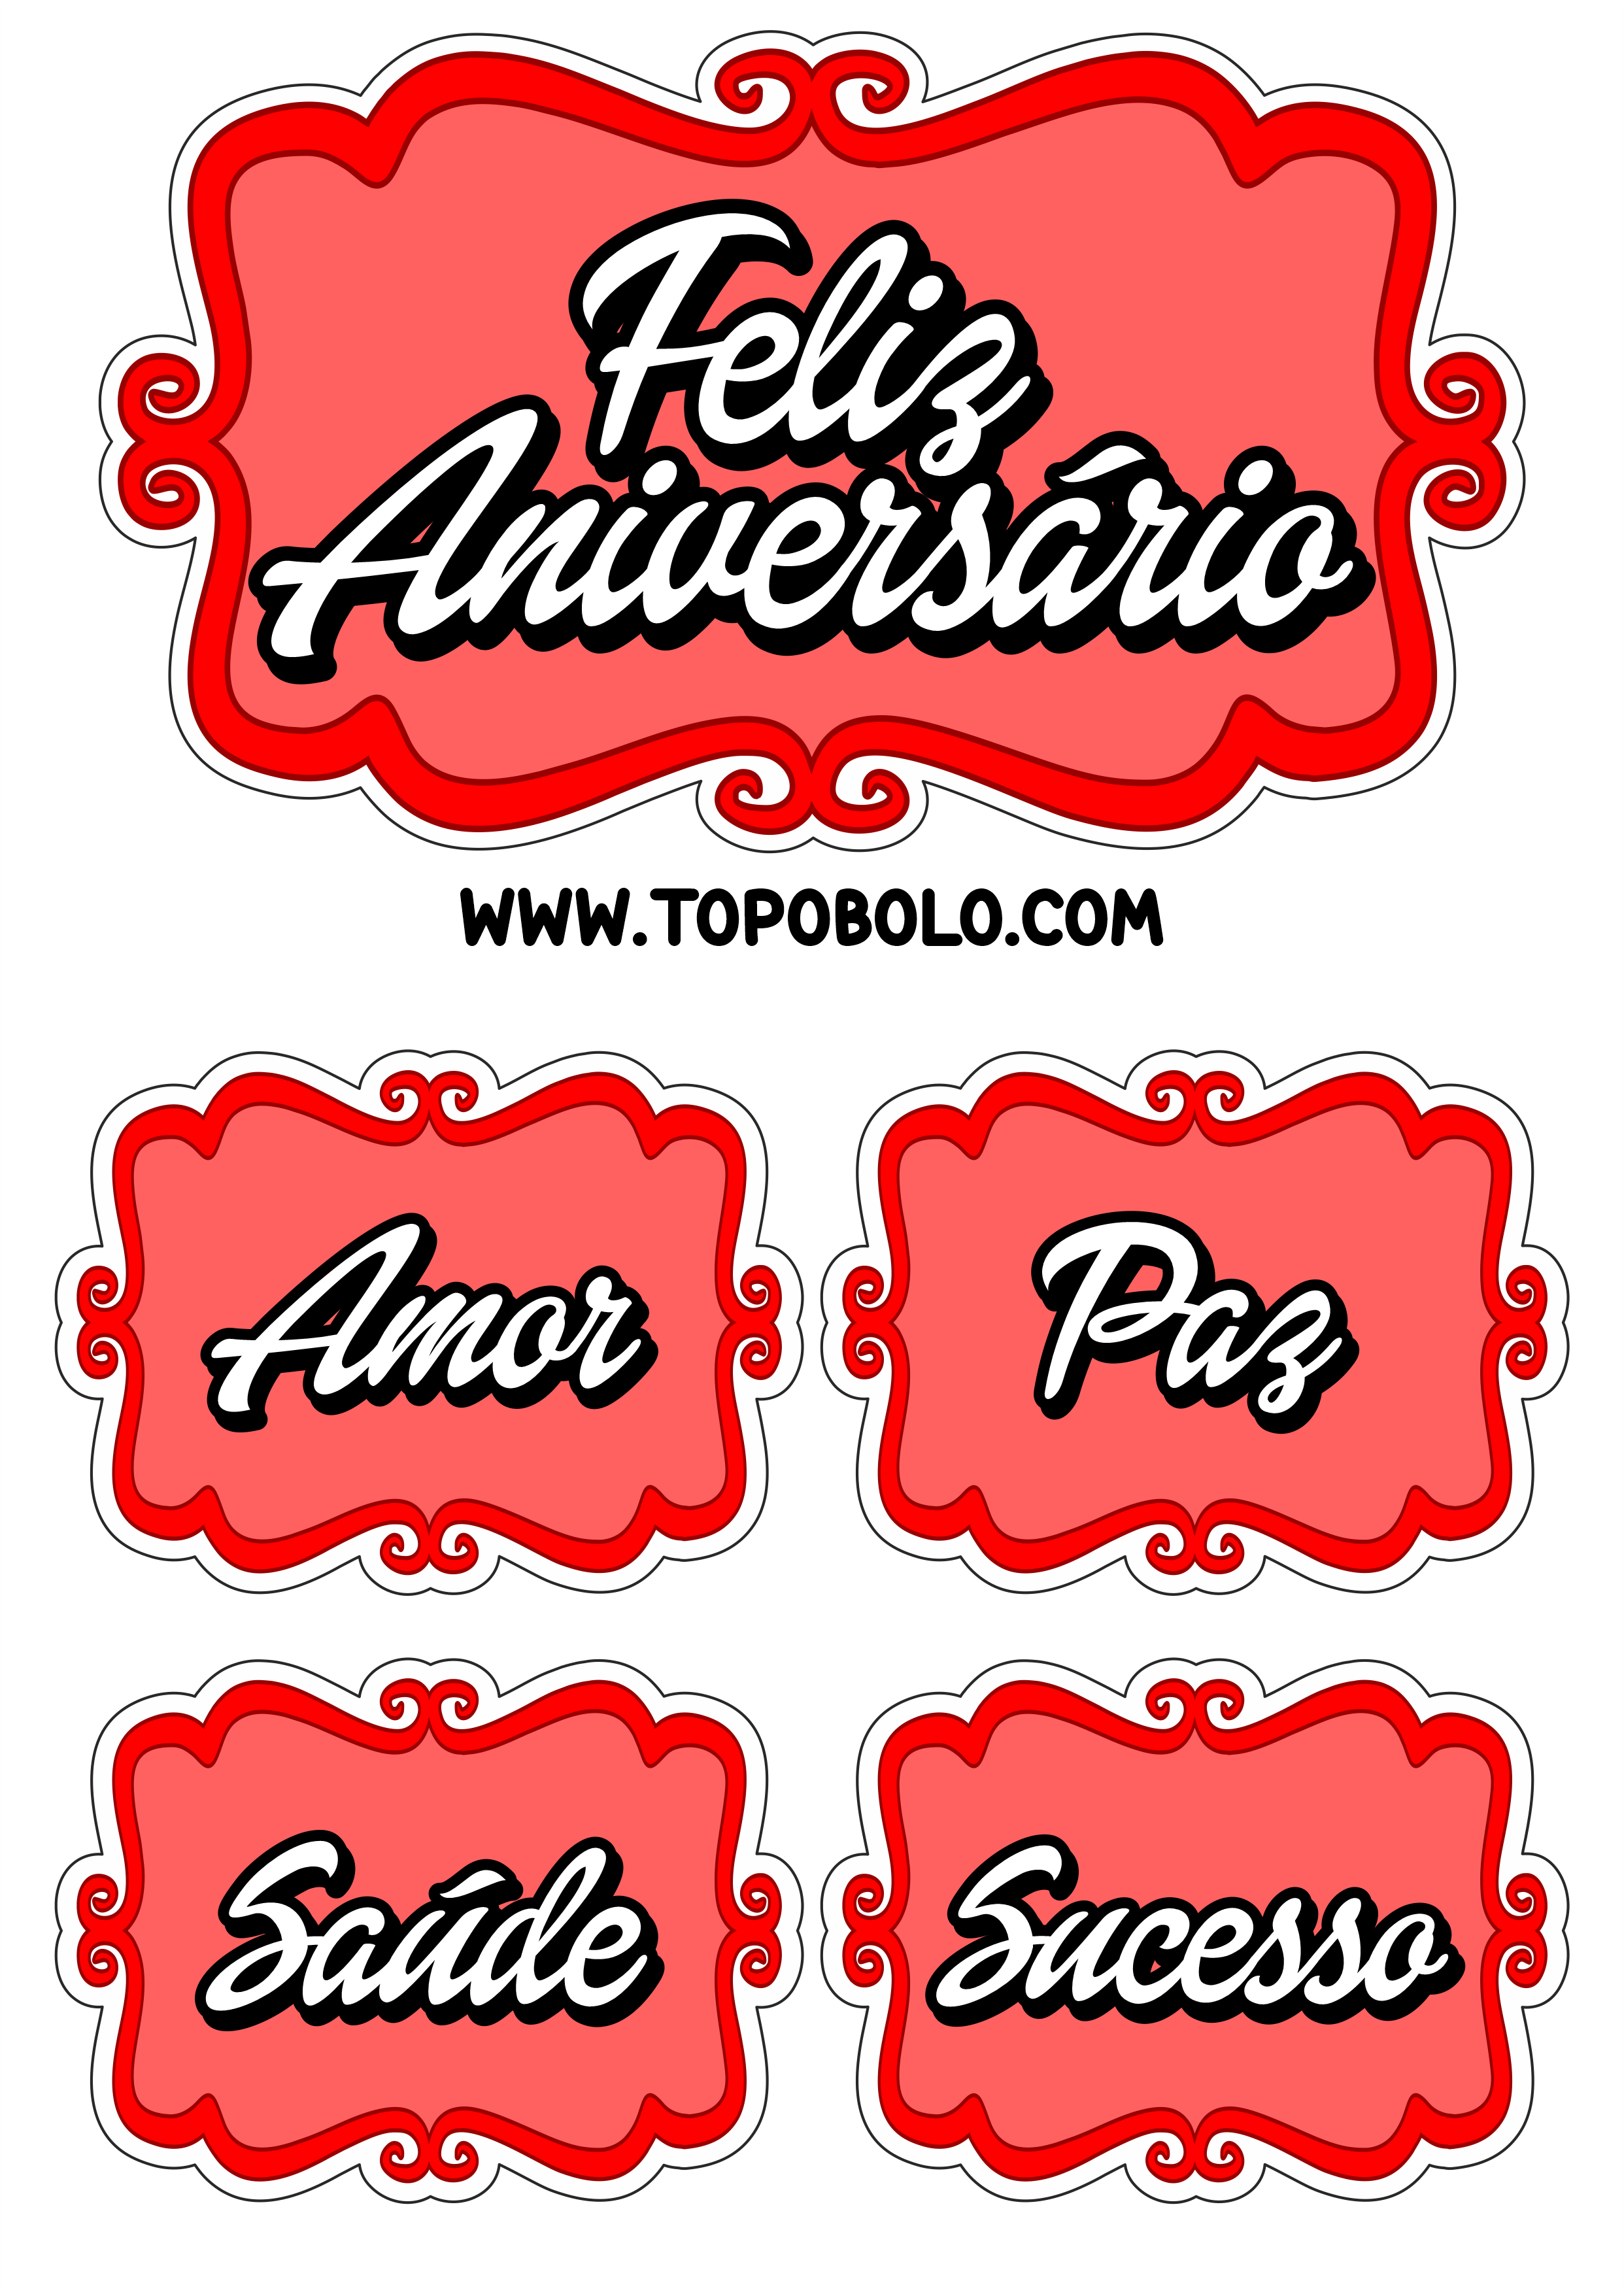 Topo de bolo para imprimir feliz aniversário amor paz saúde e sucesso vermelho png